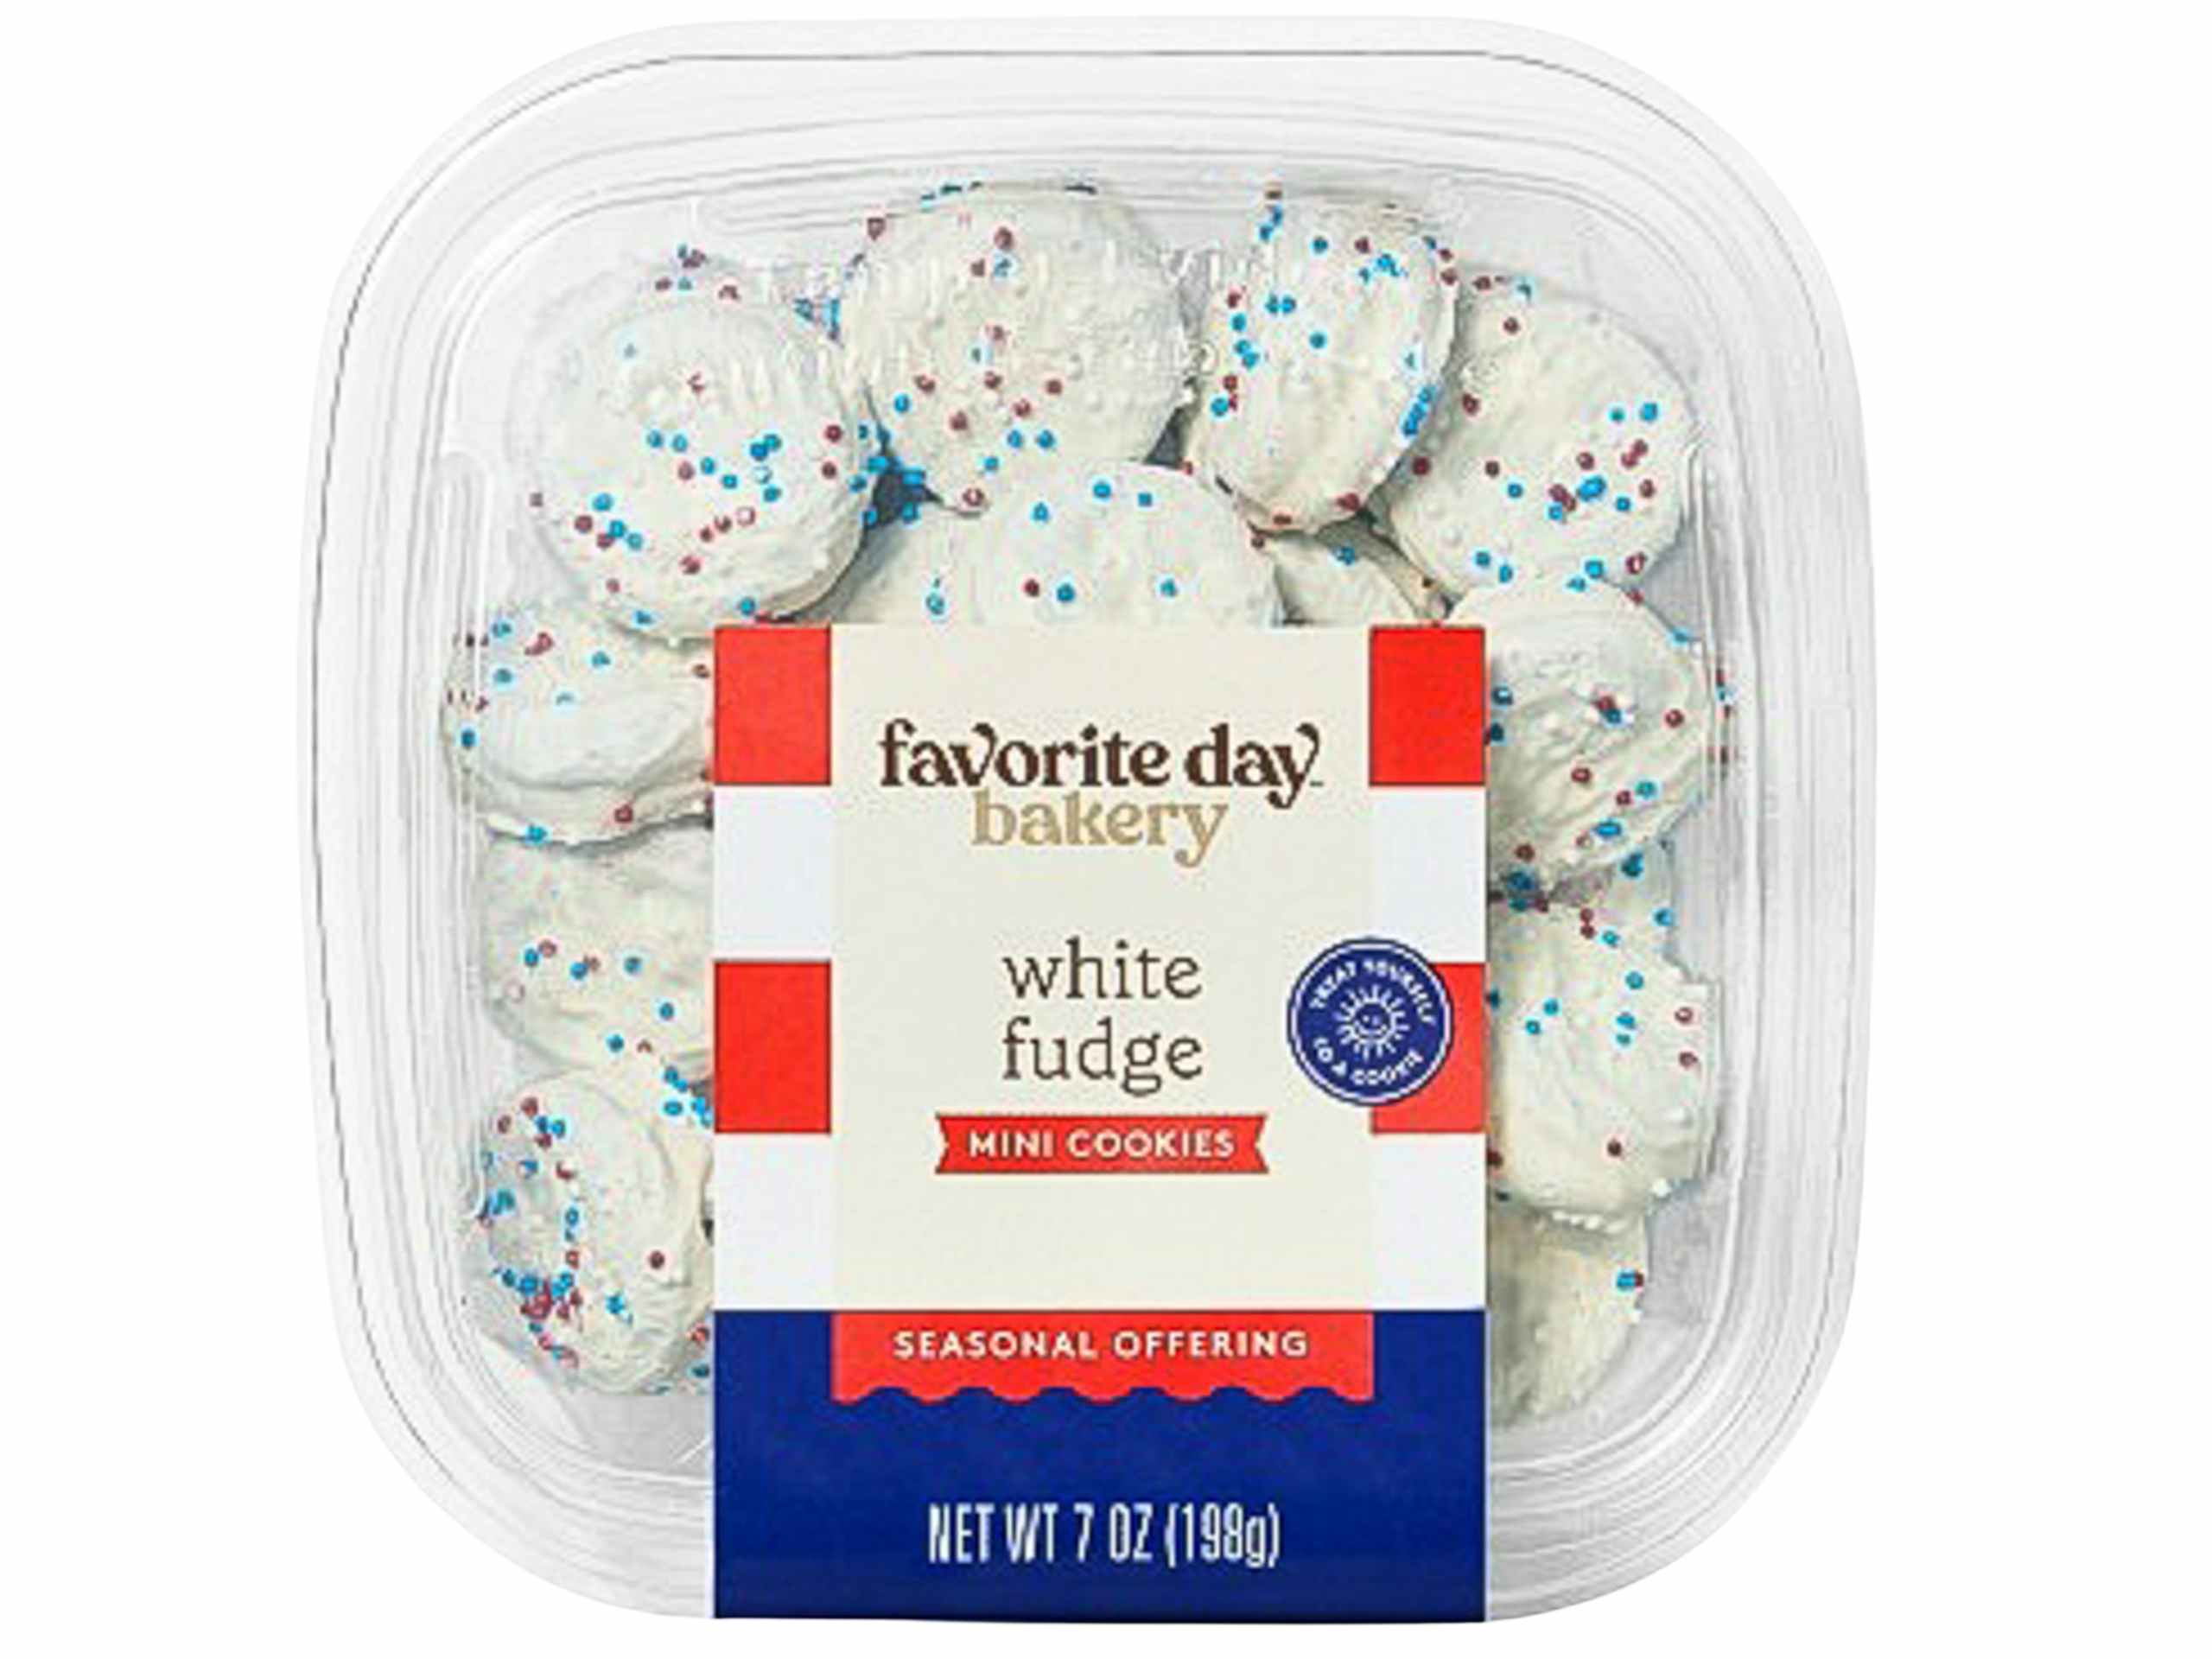 product recalls patriotic white fudge cookies